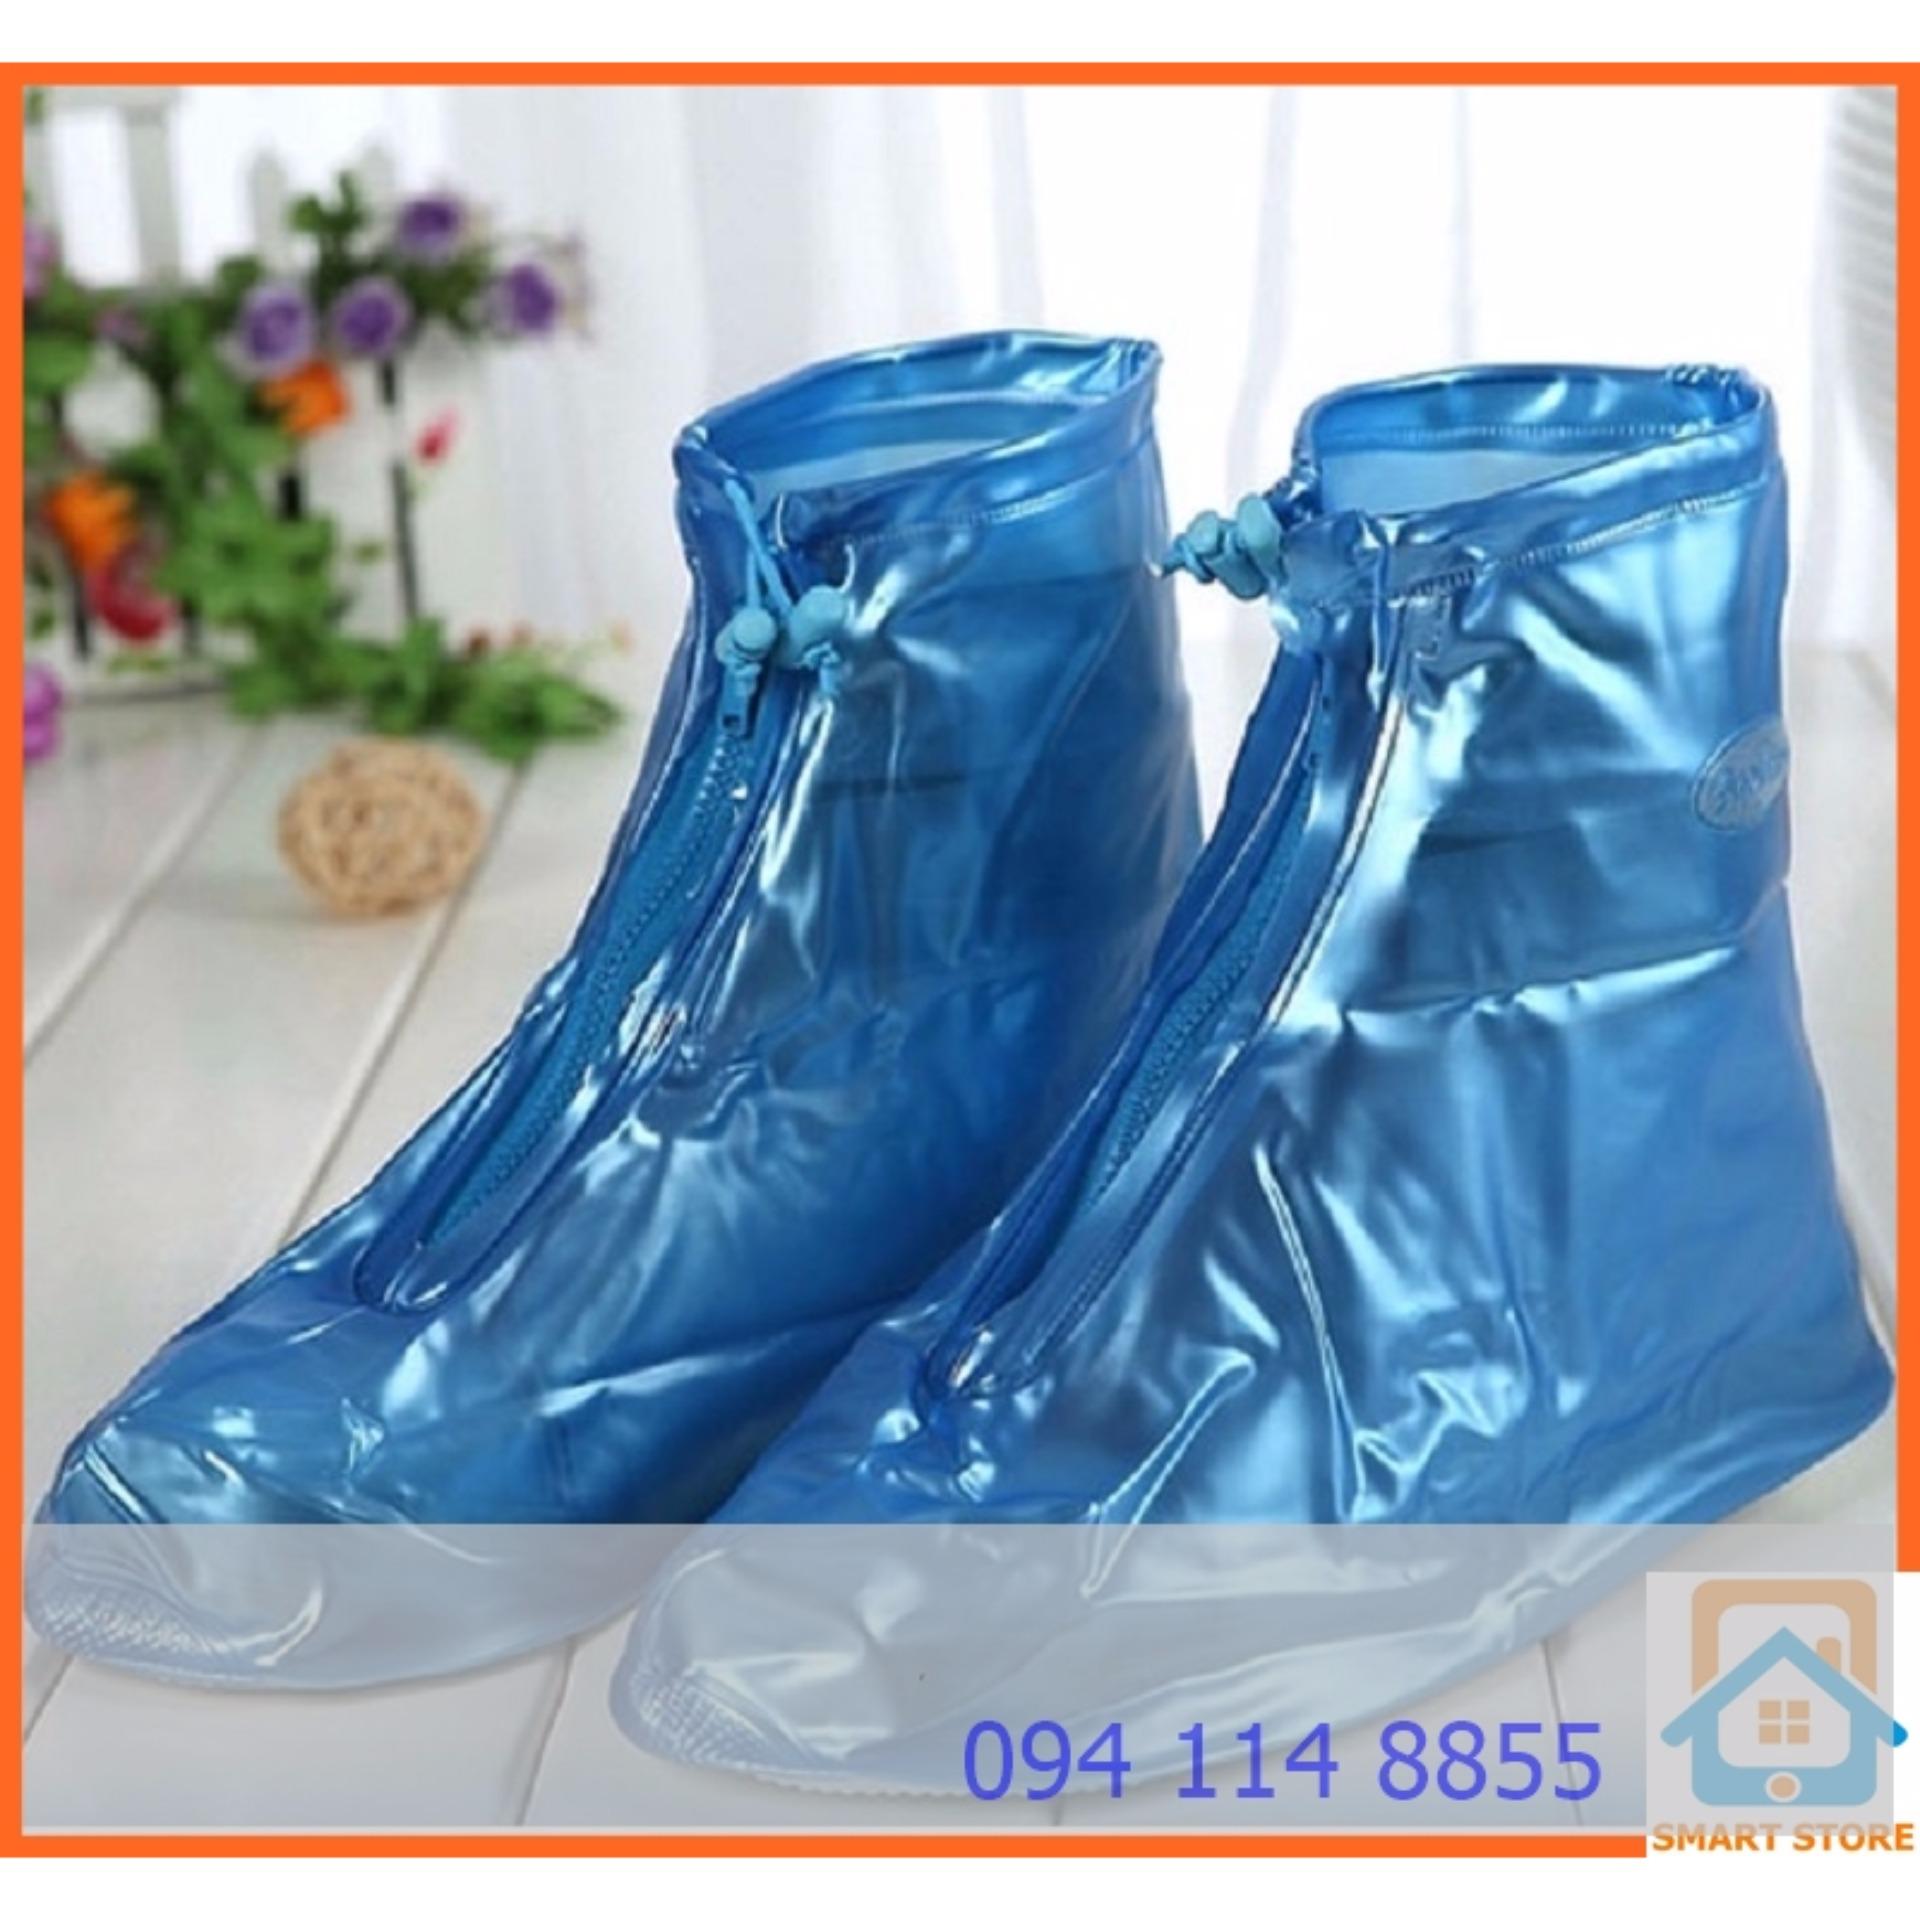 Ủng bảo vệ giày trời mưa Smart Store (Màu ngẫu nhiên)